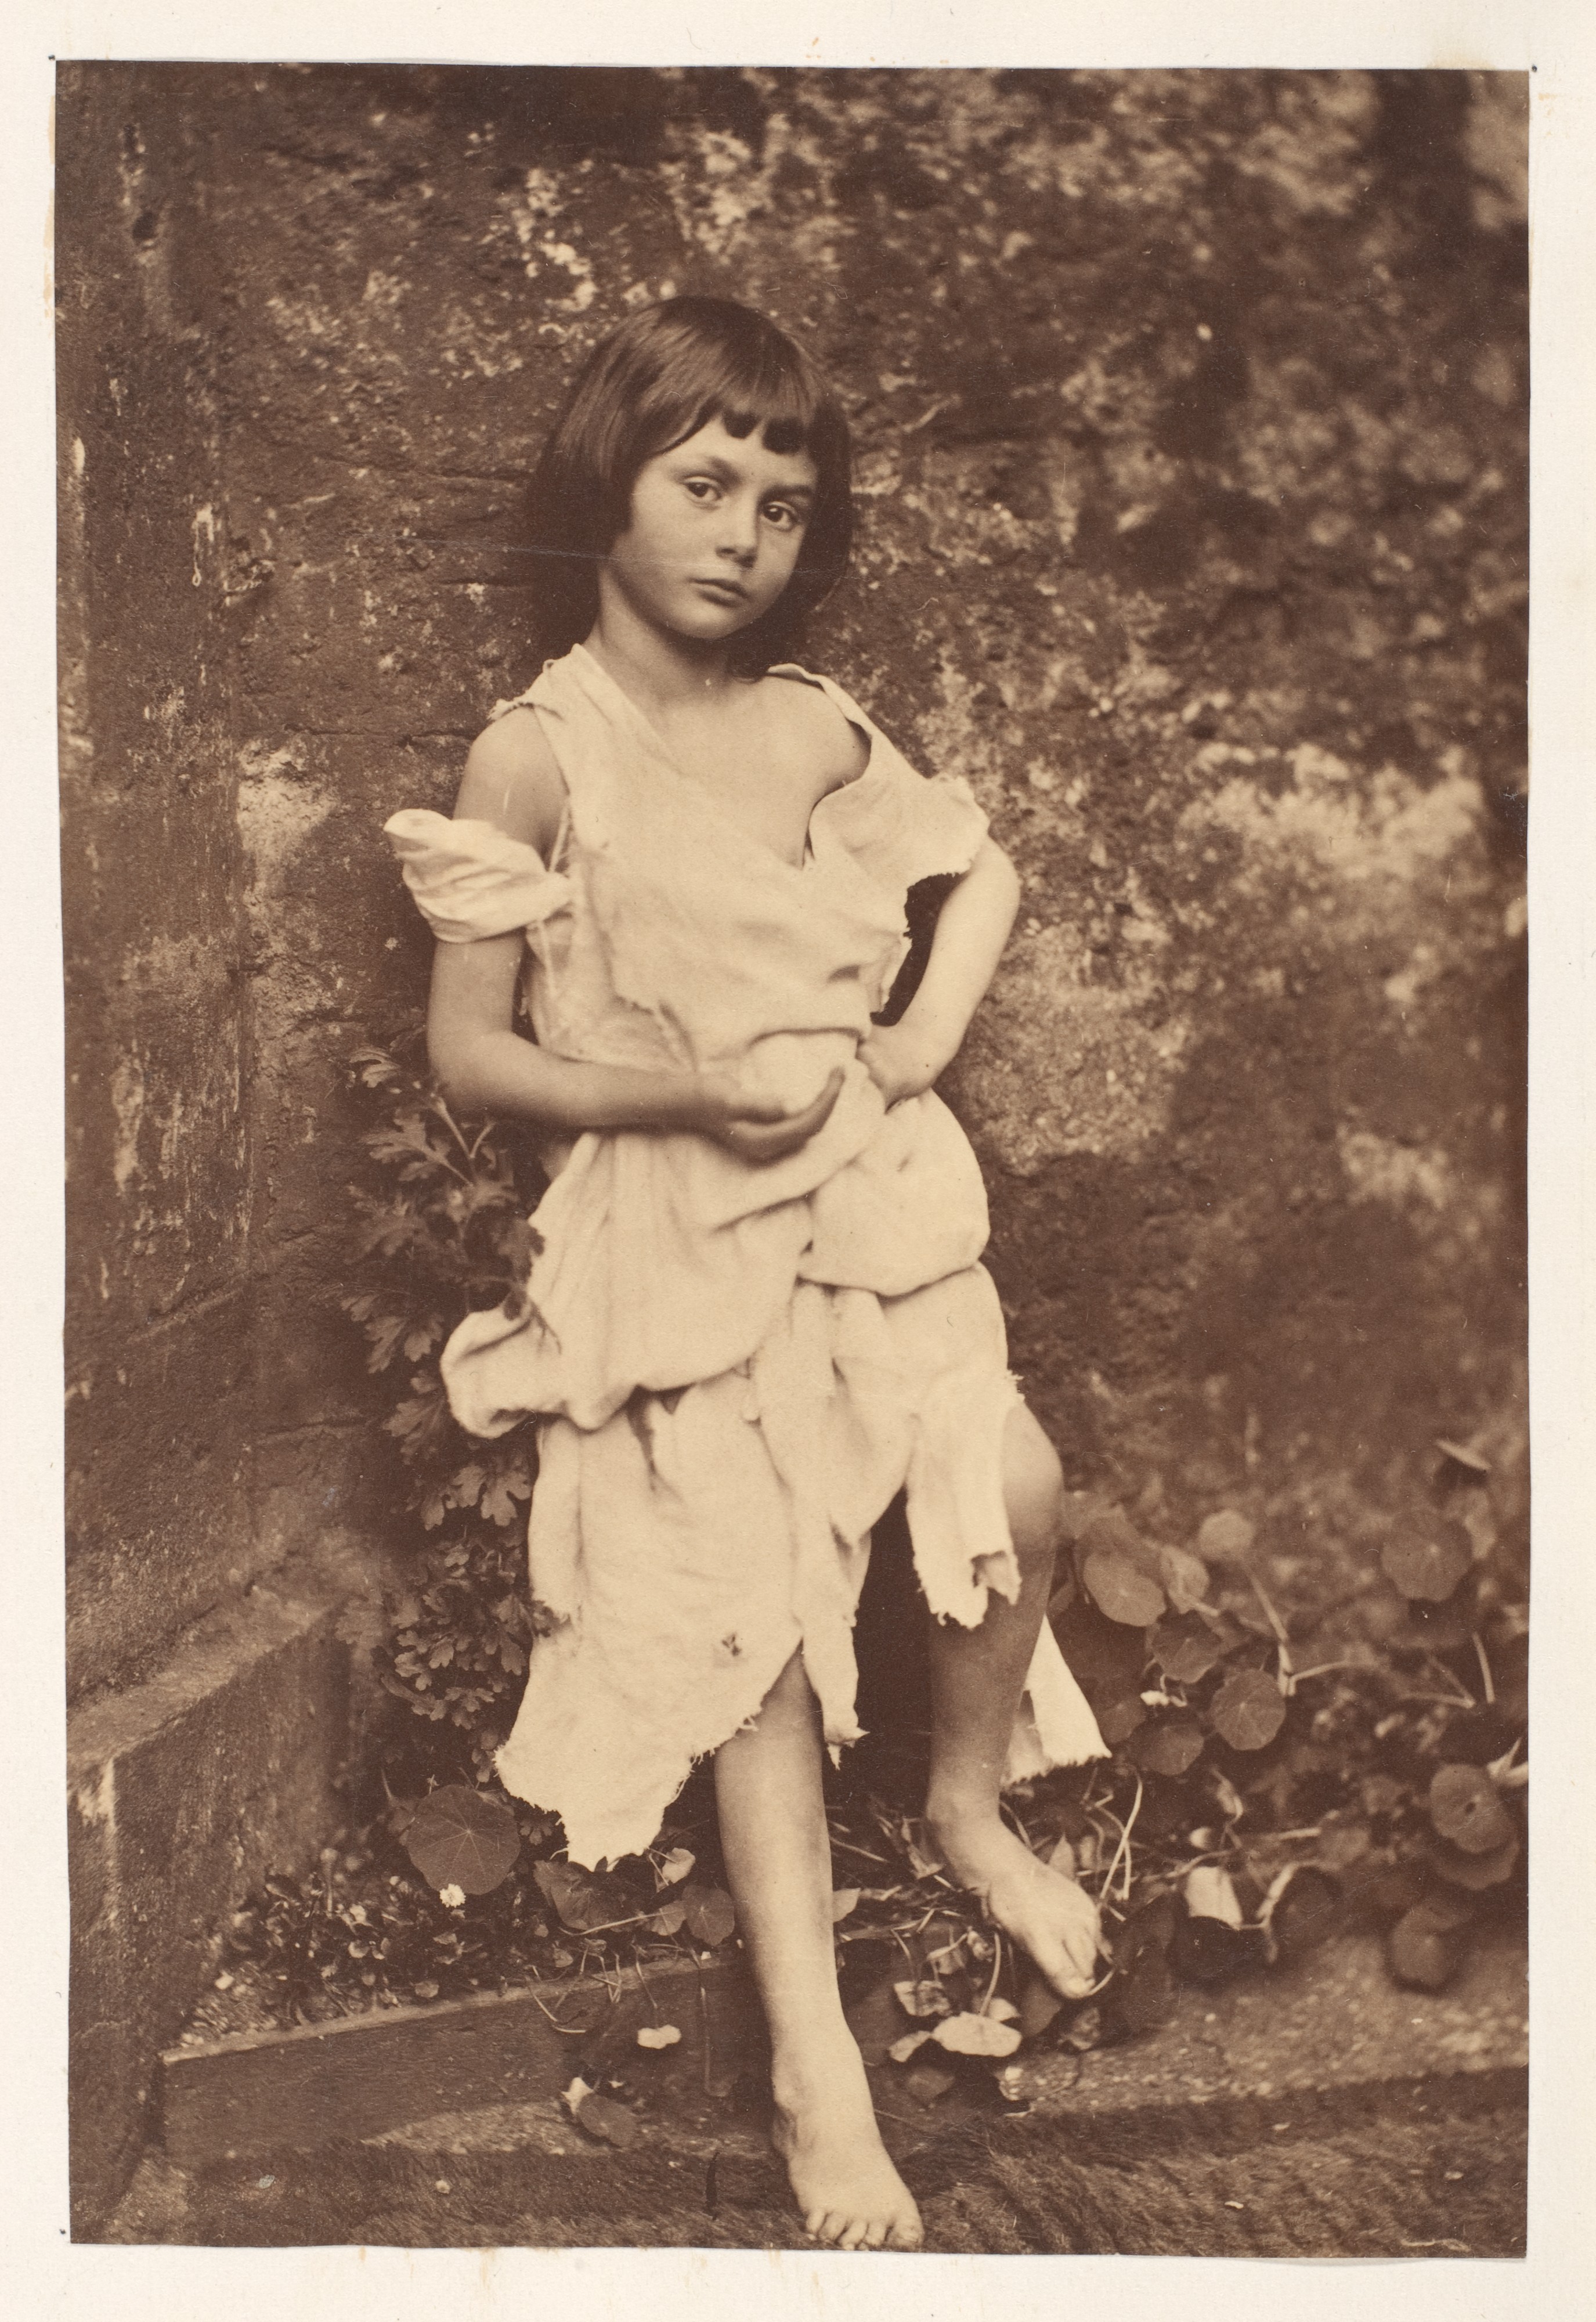 Алиса Плезенс Лидделл в образе попрошайки, 1858. Автор Льюис Кэрролл